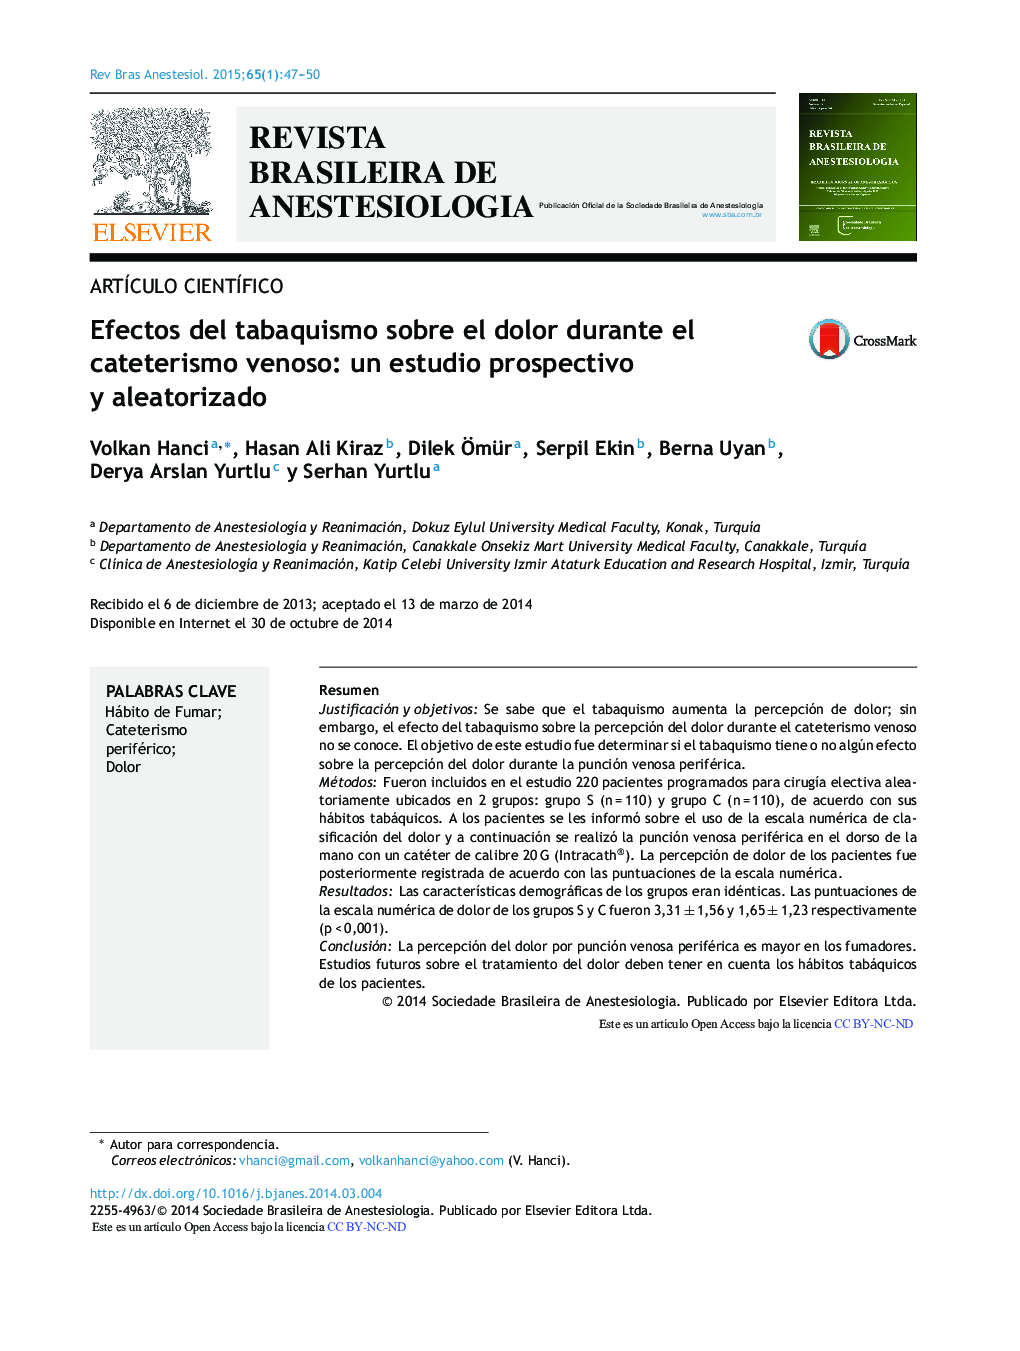 Efectos del tabaquismo sobre el dolor durante el cateterismo venoso: un estudio prospectivo y aleatorizado